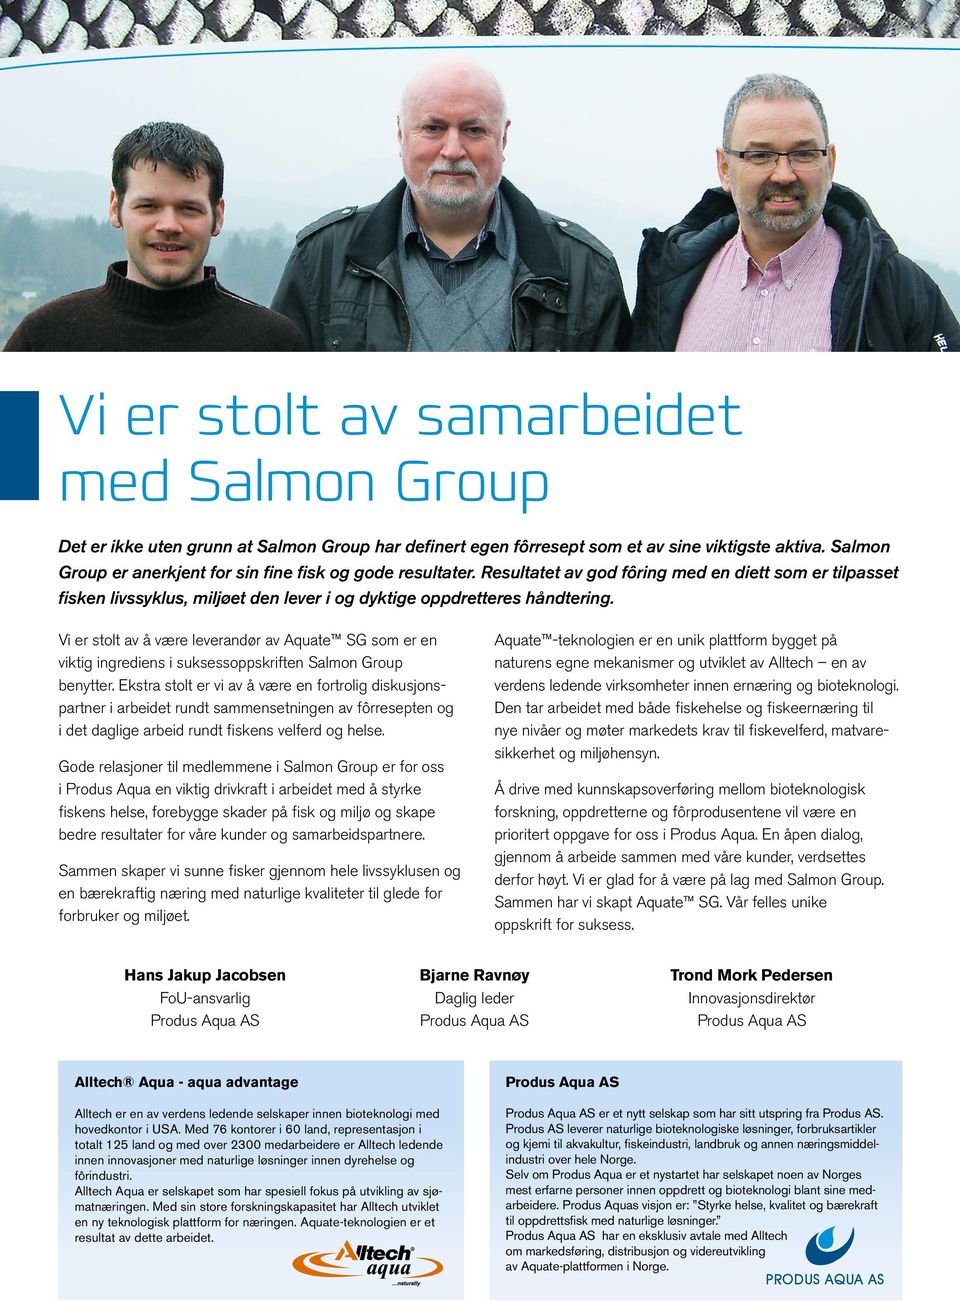 Vi er stolt av å være leverandør av Aquate som er en viktig ingrediens i suksessoppskriften Salmon Group benytter.